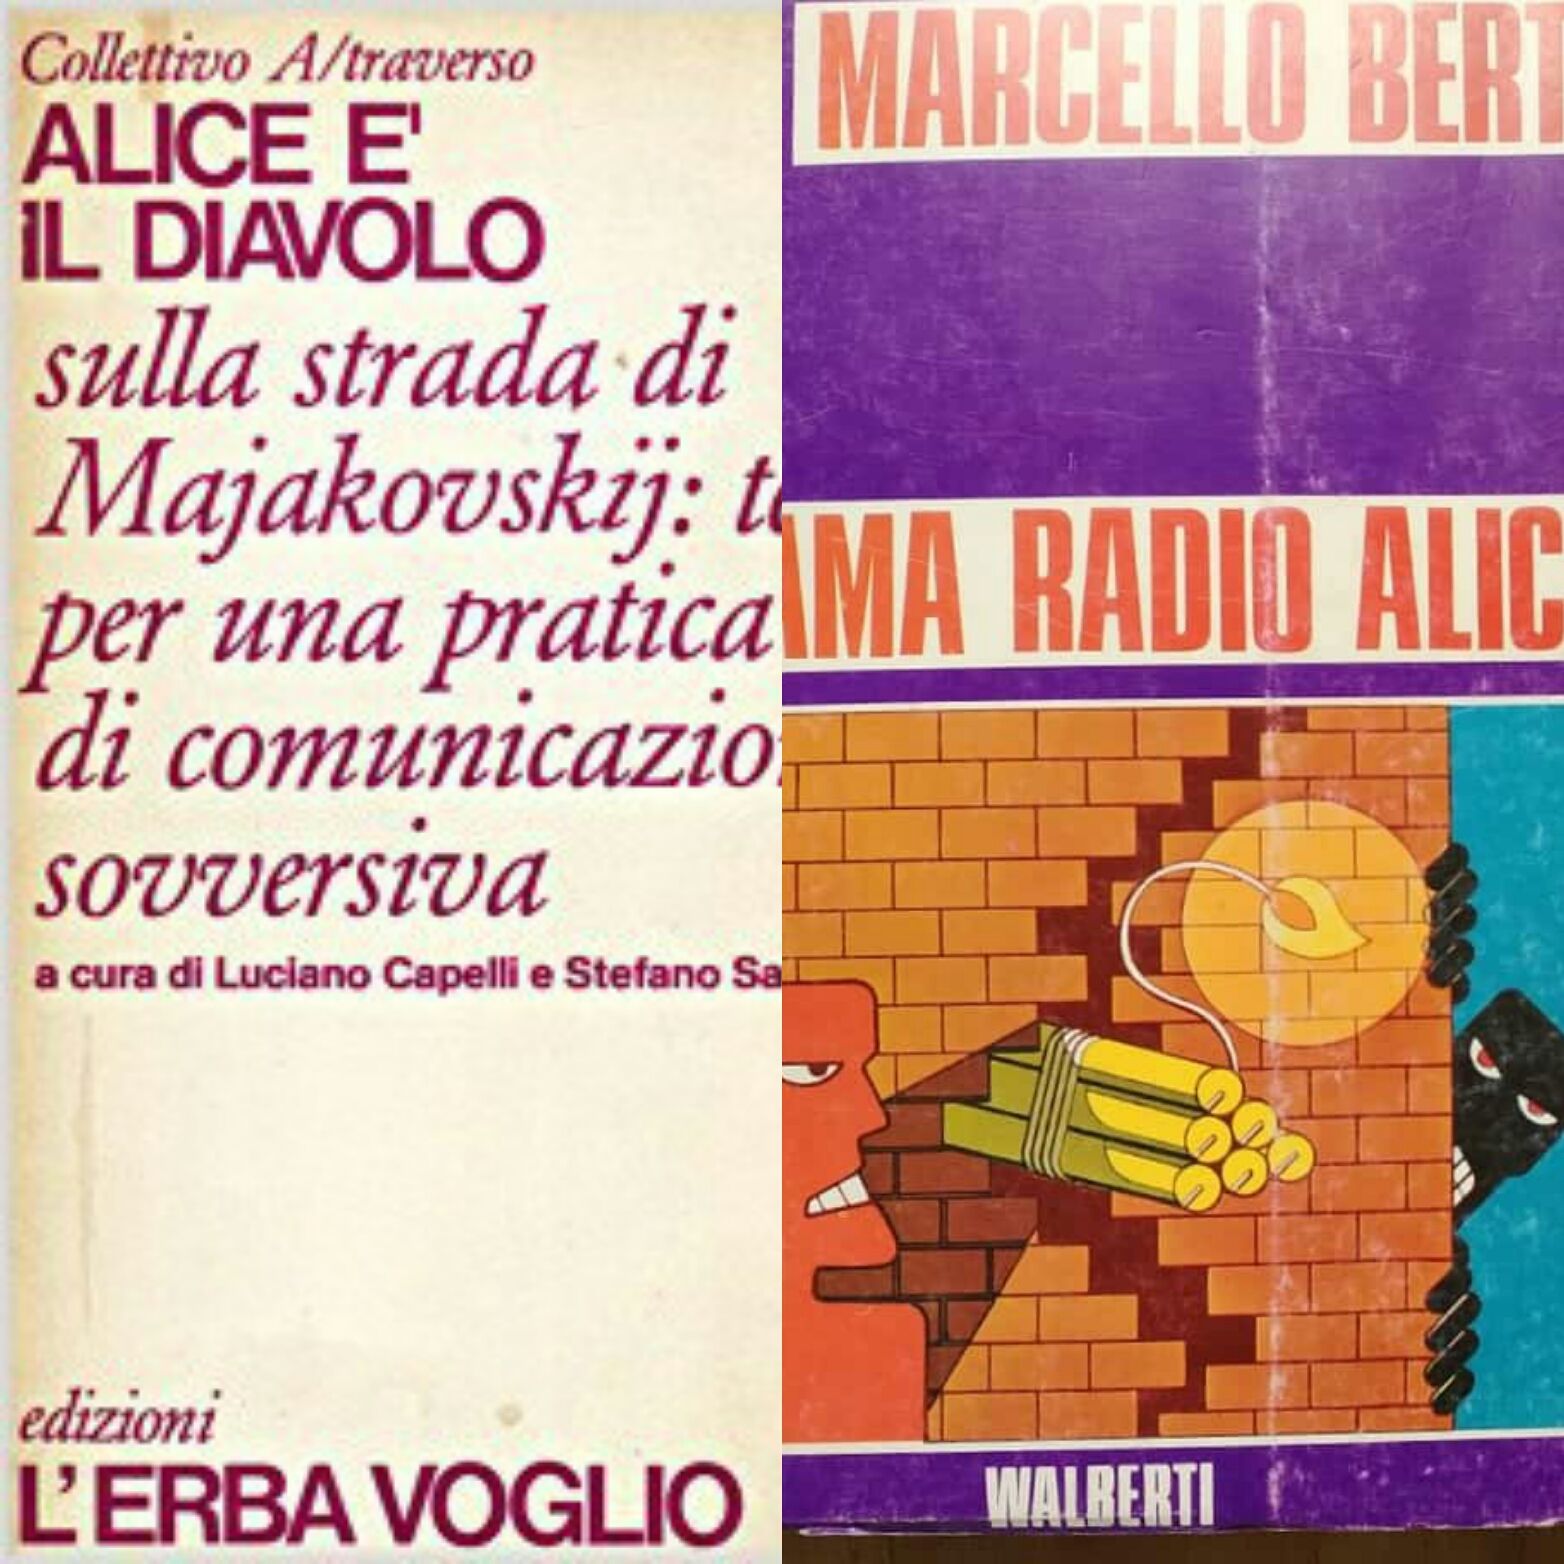 “Chiama Radio Alice”, e “Alice è il Diavolo” due libri sovversivi sulle frequenze libere